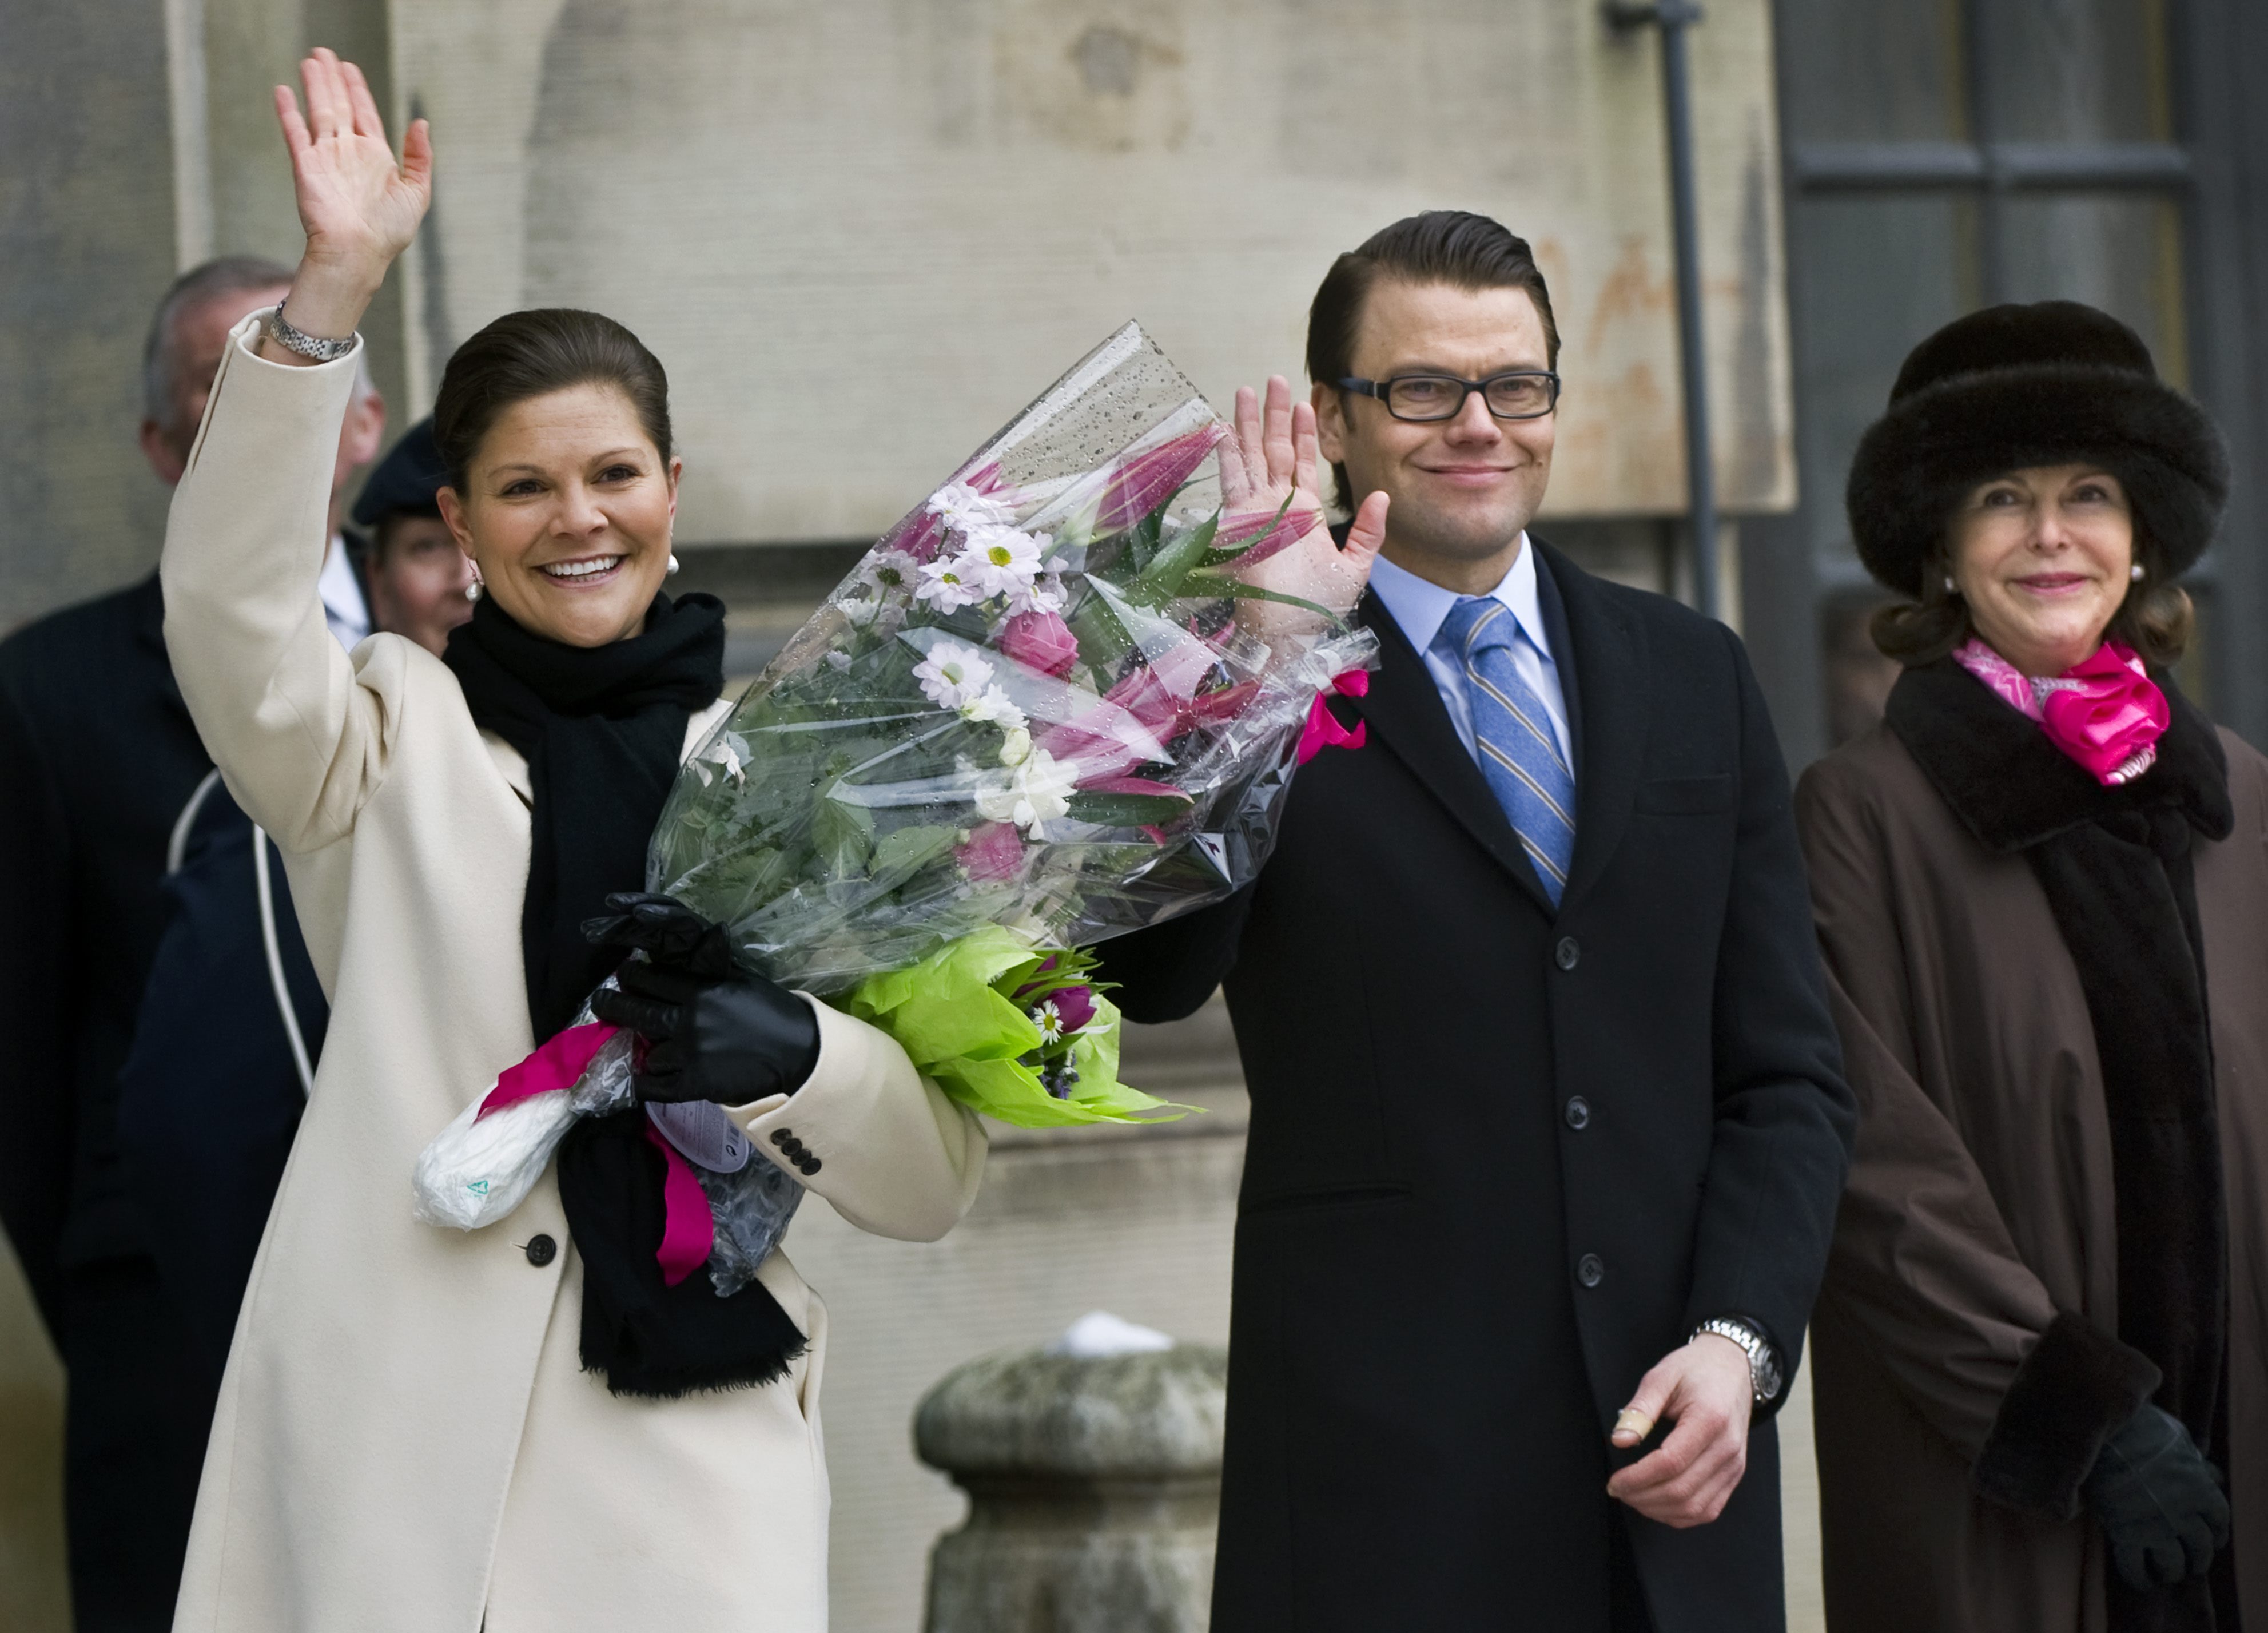 kronprinsessan Victoria, President, Monarki, Kungligt, Gudrun Schyman, Republik, Prins Daniel, Riksdagsvalet 2010, Feministiskt initiativ, Kungliga bröllop